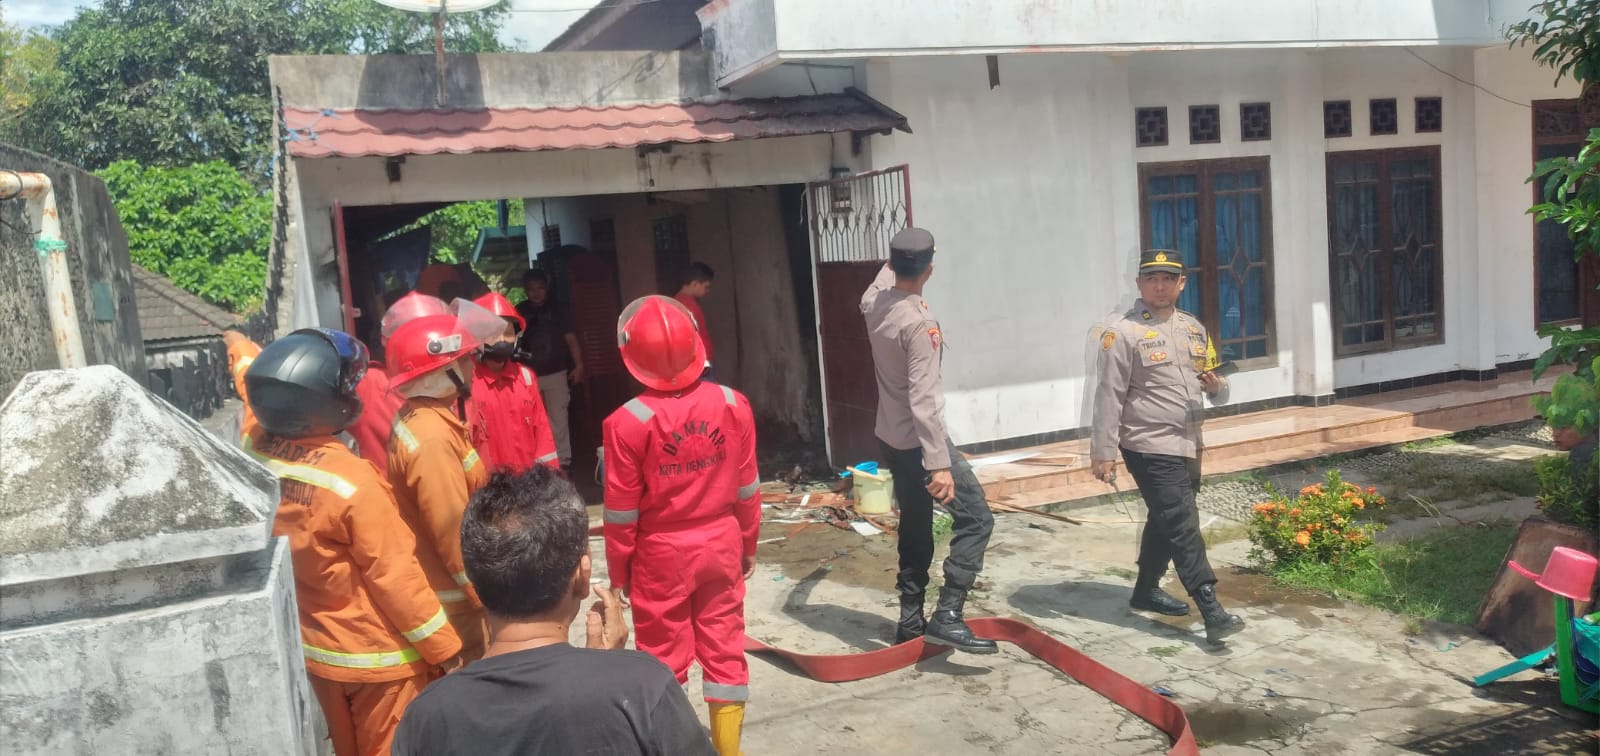 Rumah di Kota Bengkulu Terbakar, Pemilik Alami Luka Bakar